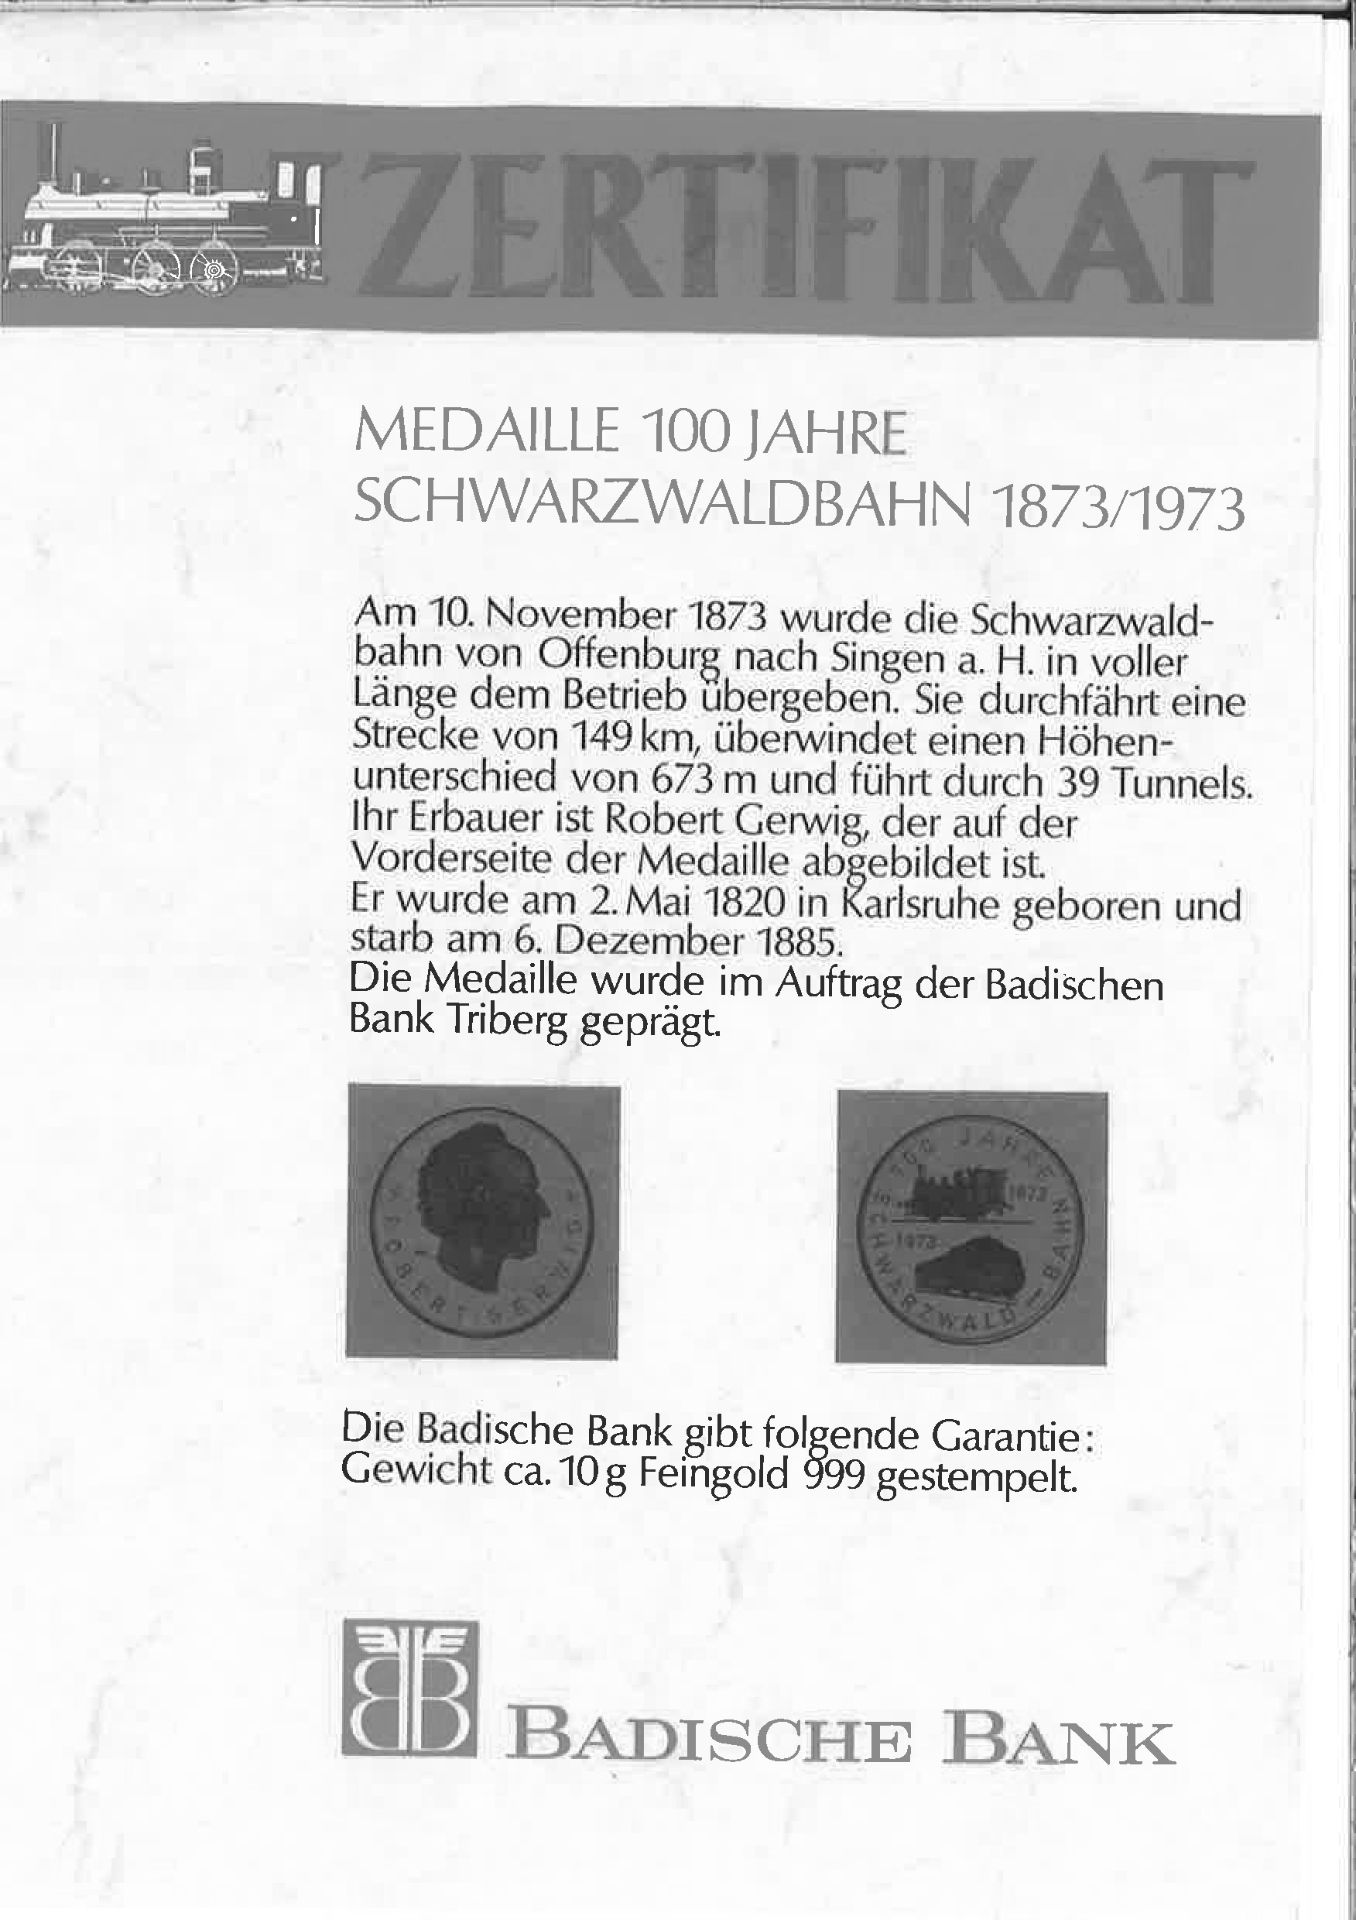 Goldene Medaille 100 Jahre Schwarzwaldbahn 1873 - 1973. - Image 2 of 2